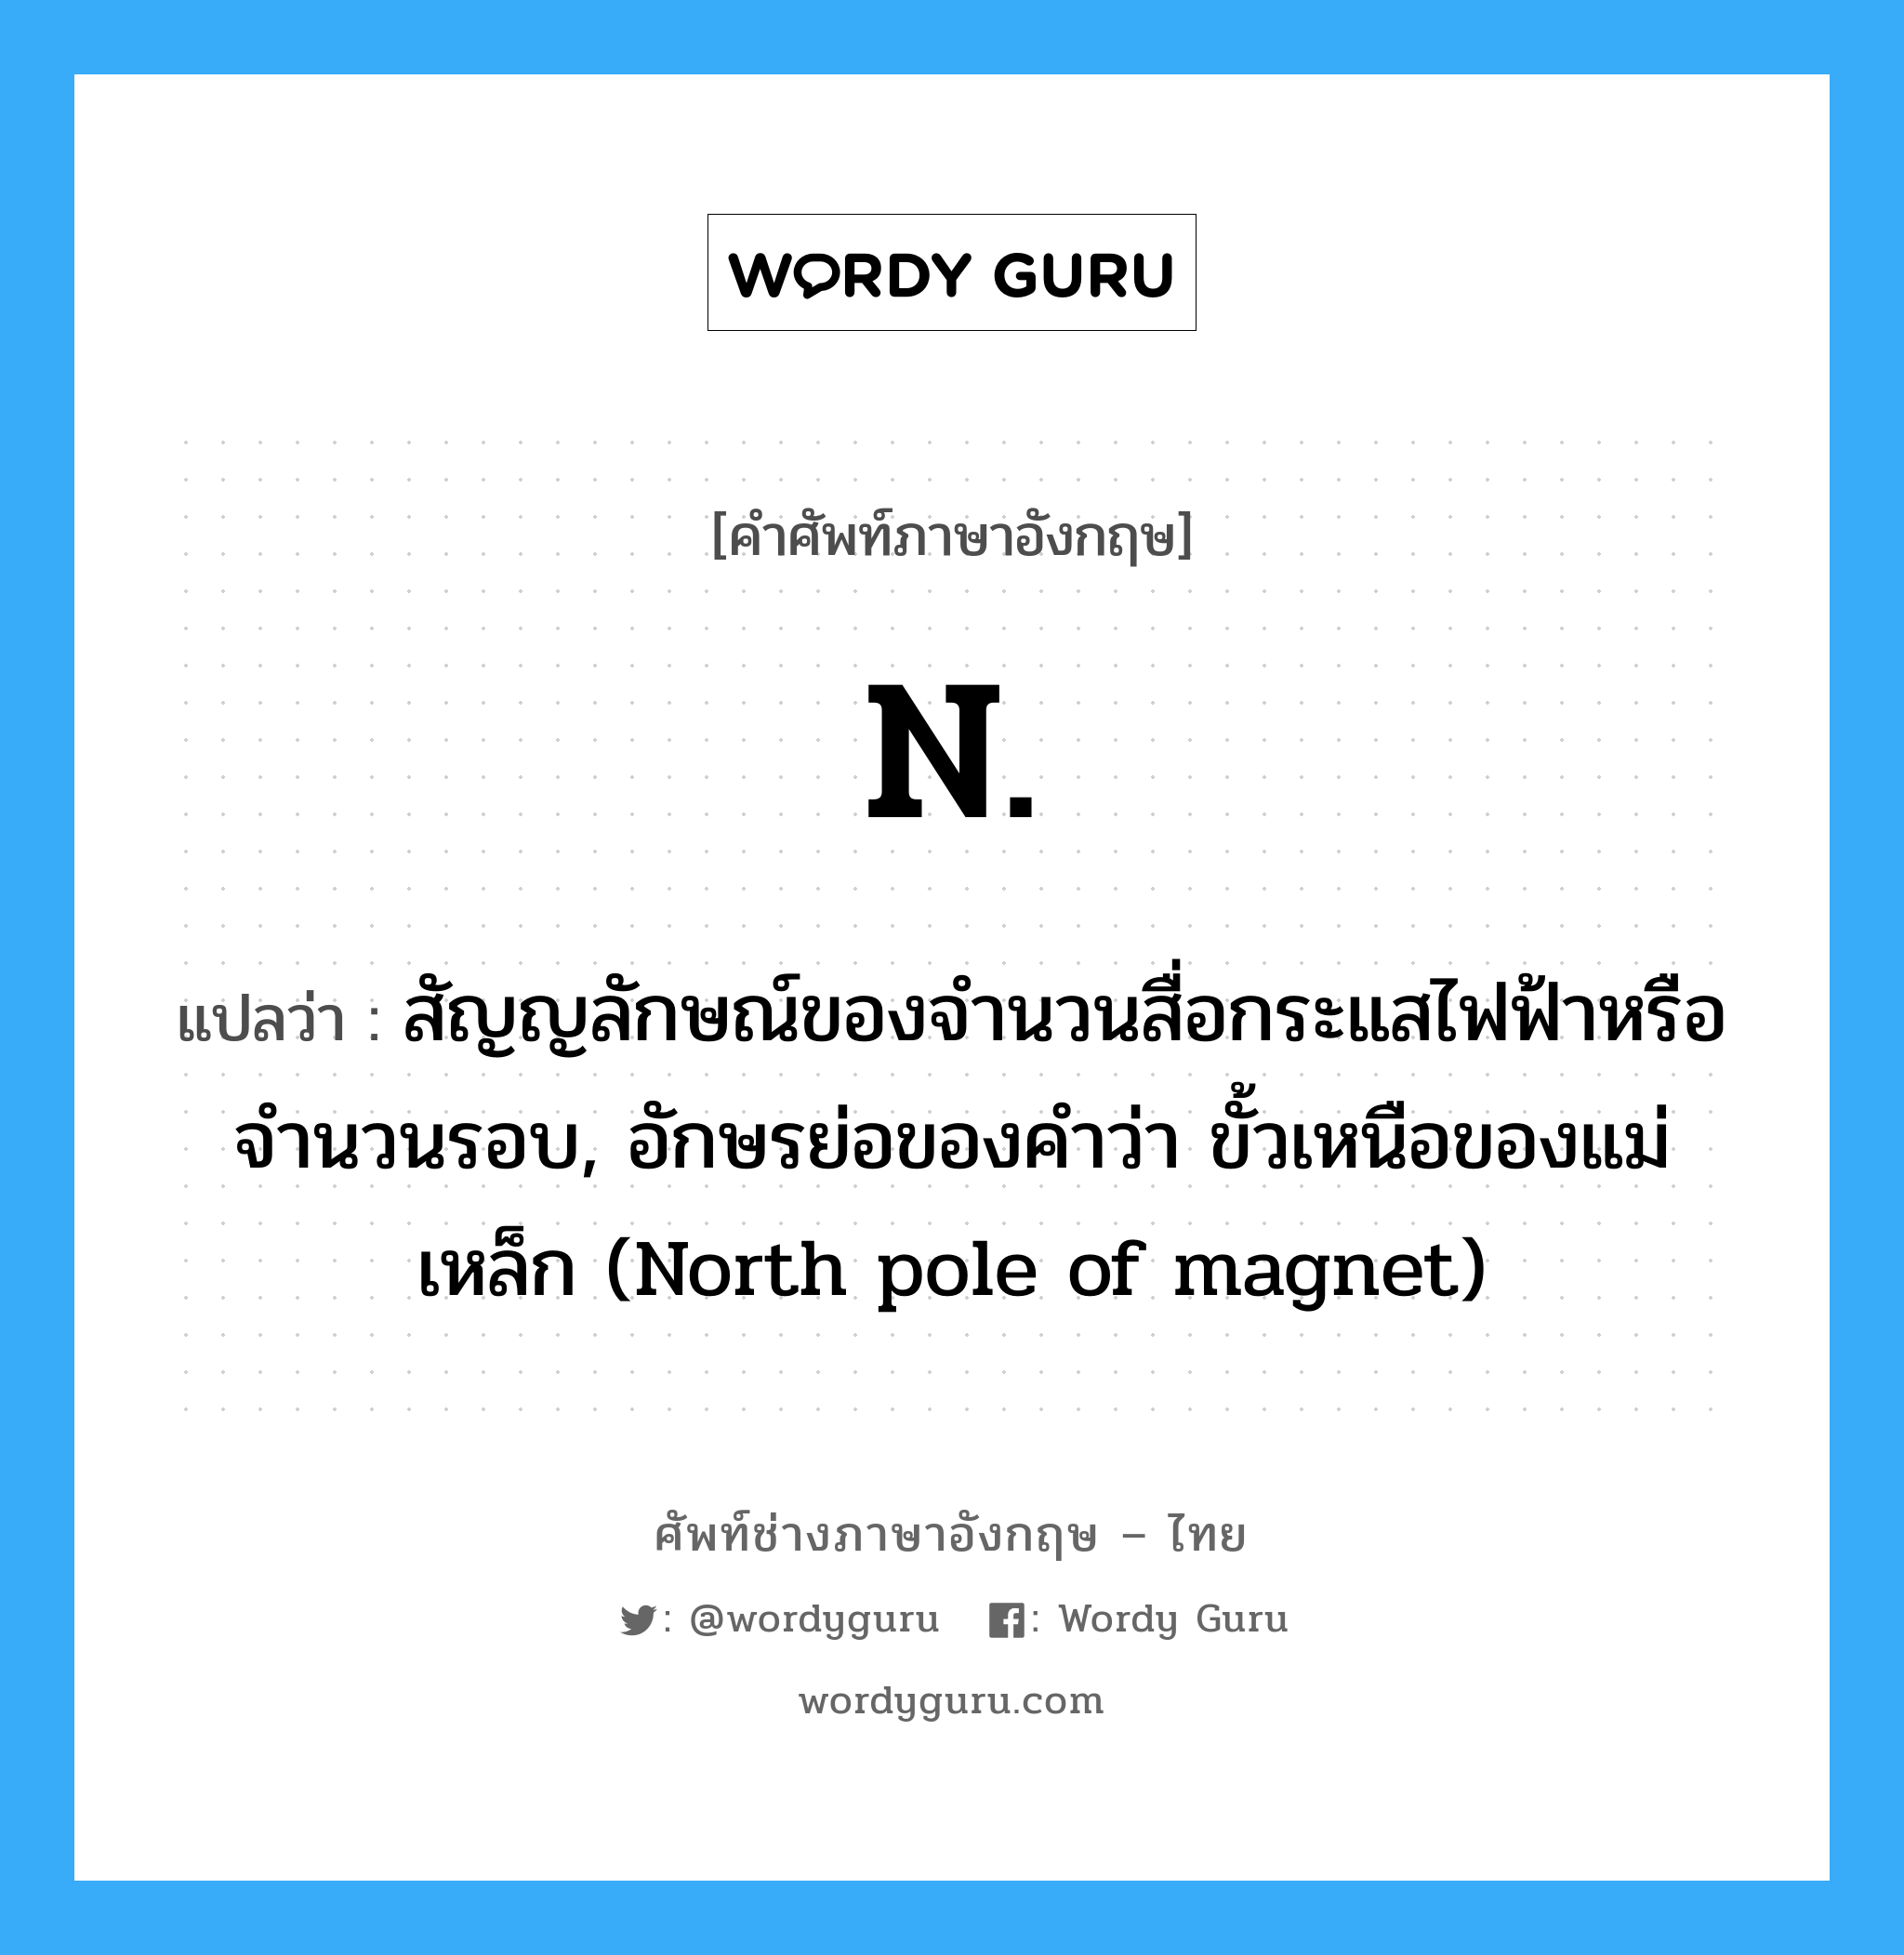 N แปลว่า?, คำศัพท์ช่างภาษาอังกฤษ - ไทย N. คำศัพท์ภาษาอังกฤษ N. แปลว่า สัญญลักษณ์ของจำนวนสื่อกระแสไฟฟ้าหรือจำนวนรอบ, อักษรย่อของคำว่า ขั้วเหนือของแม่เหล็ก (North pole of magnet)